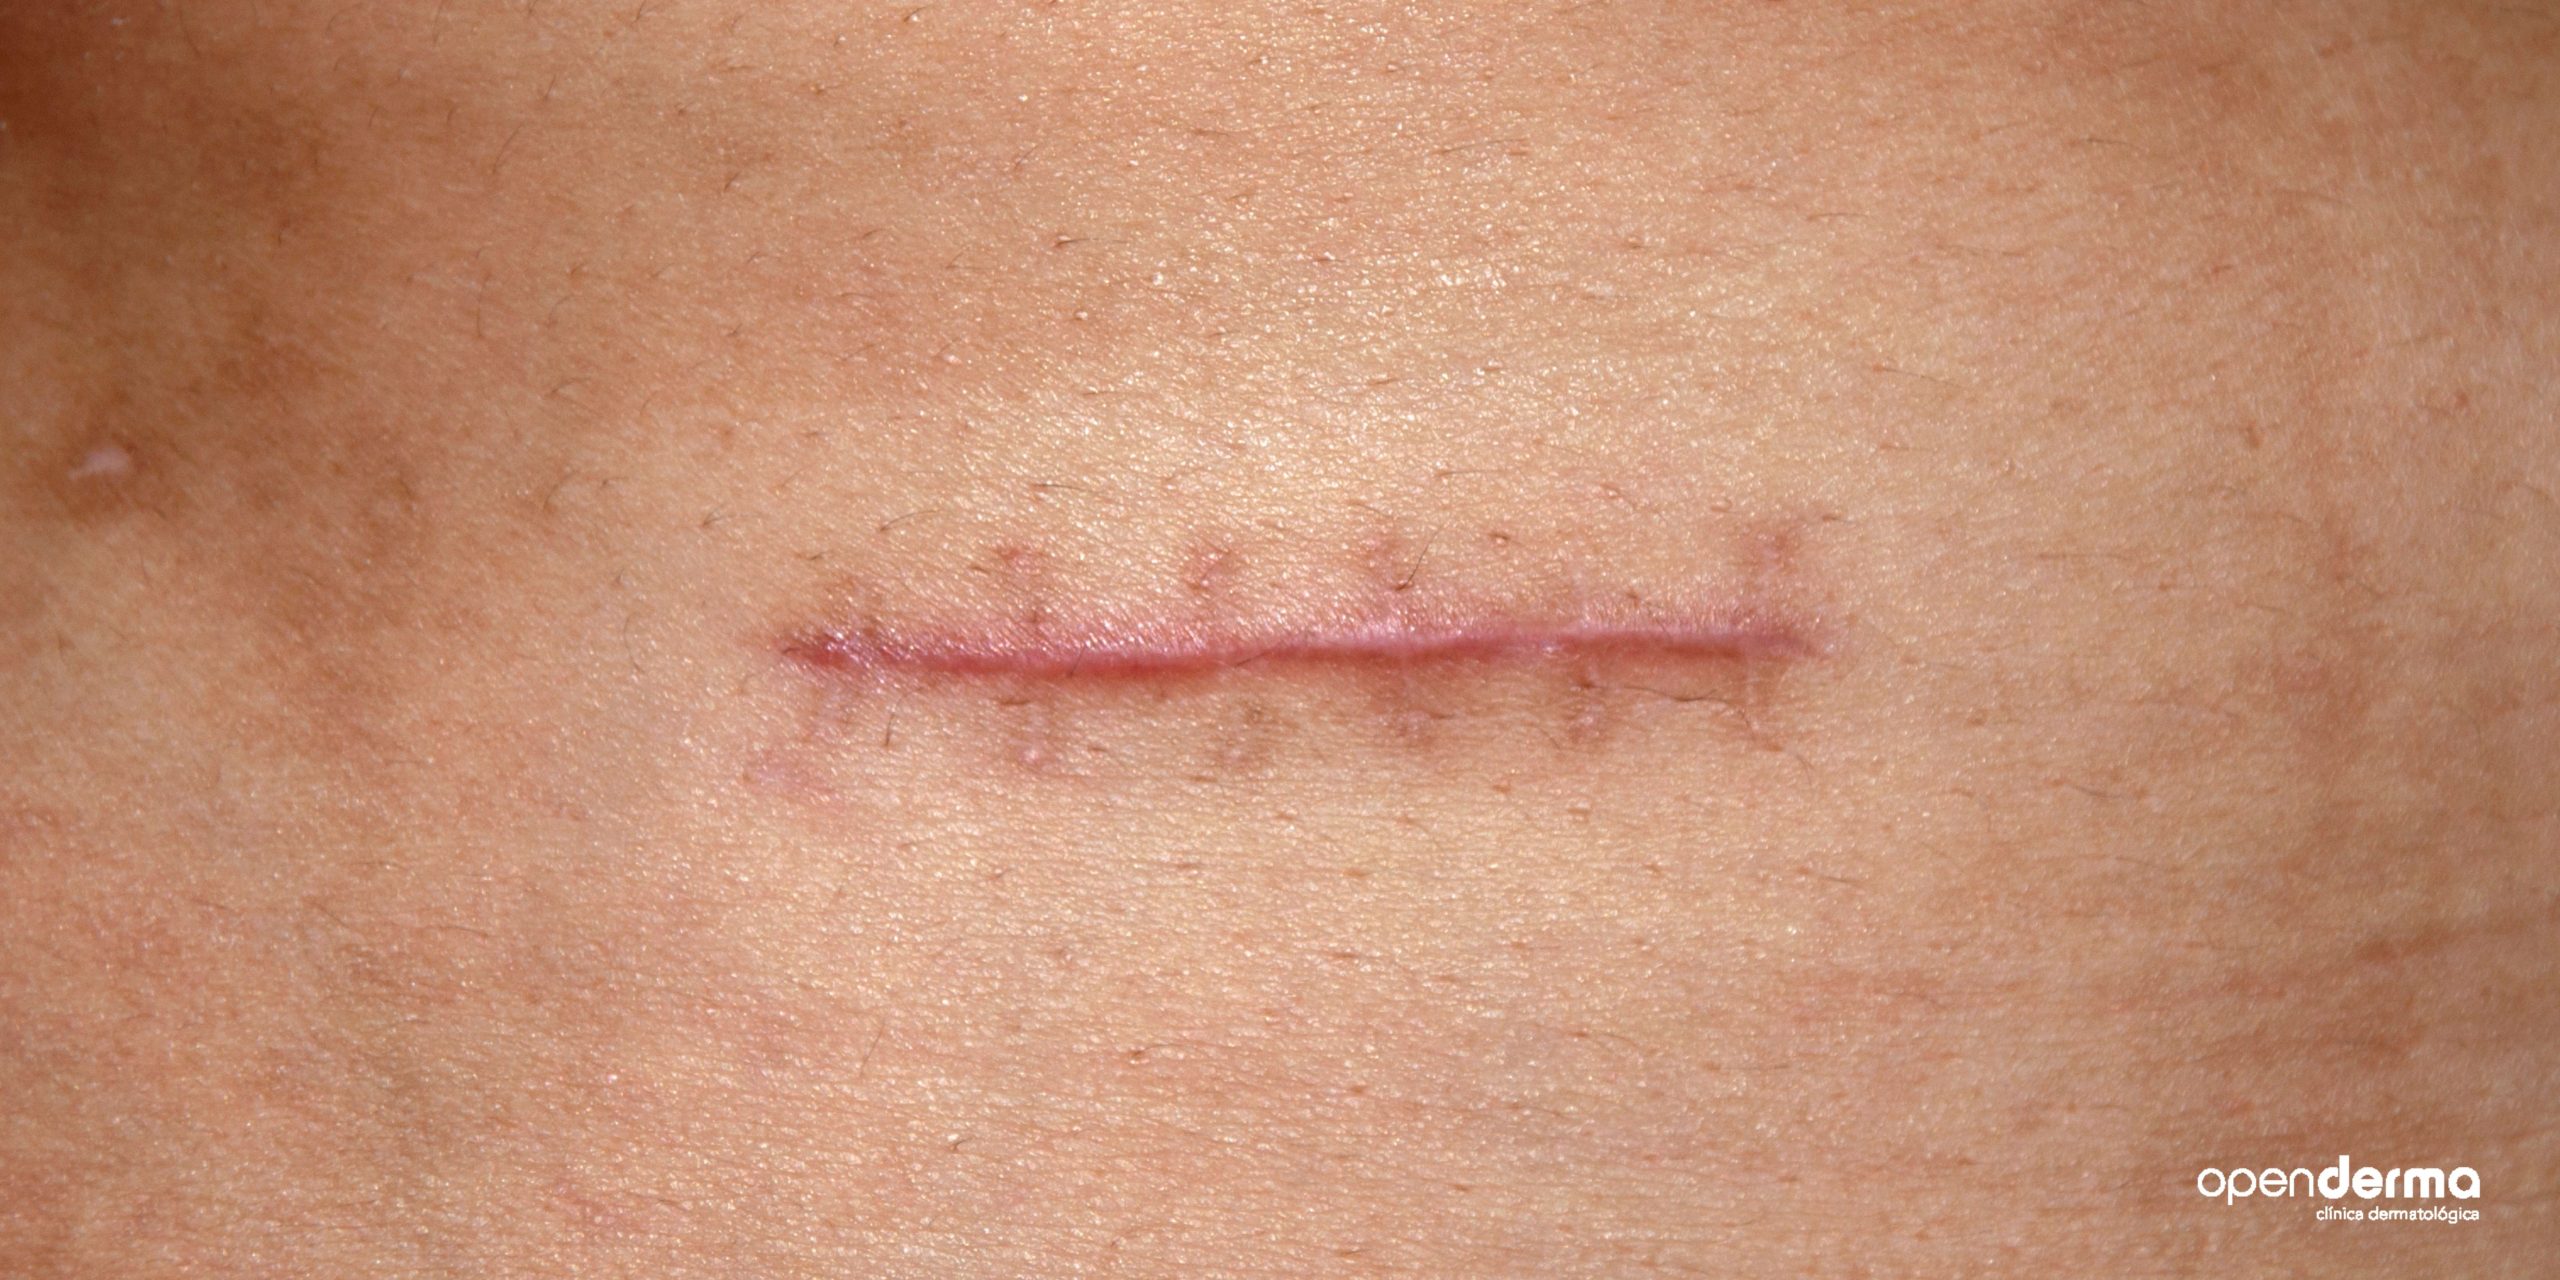 cicatriz quirurgica